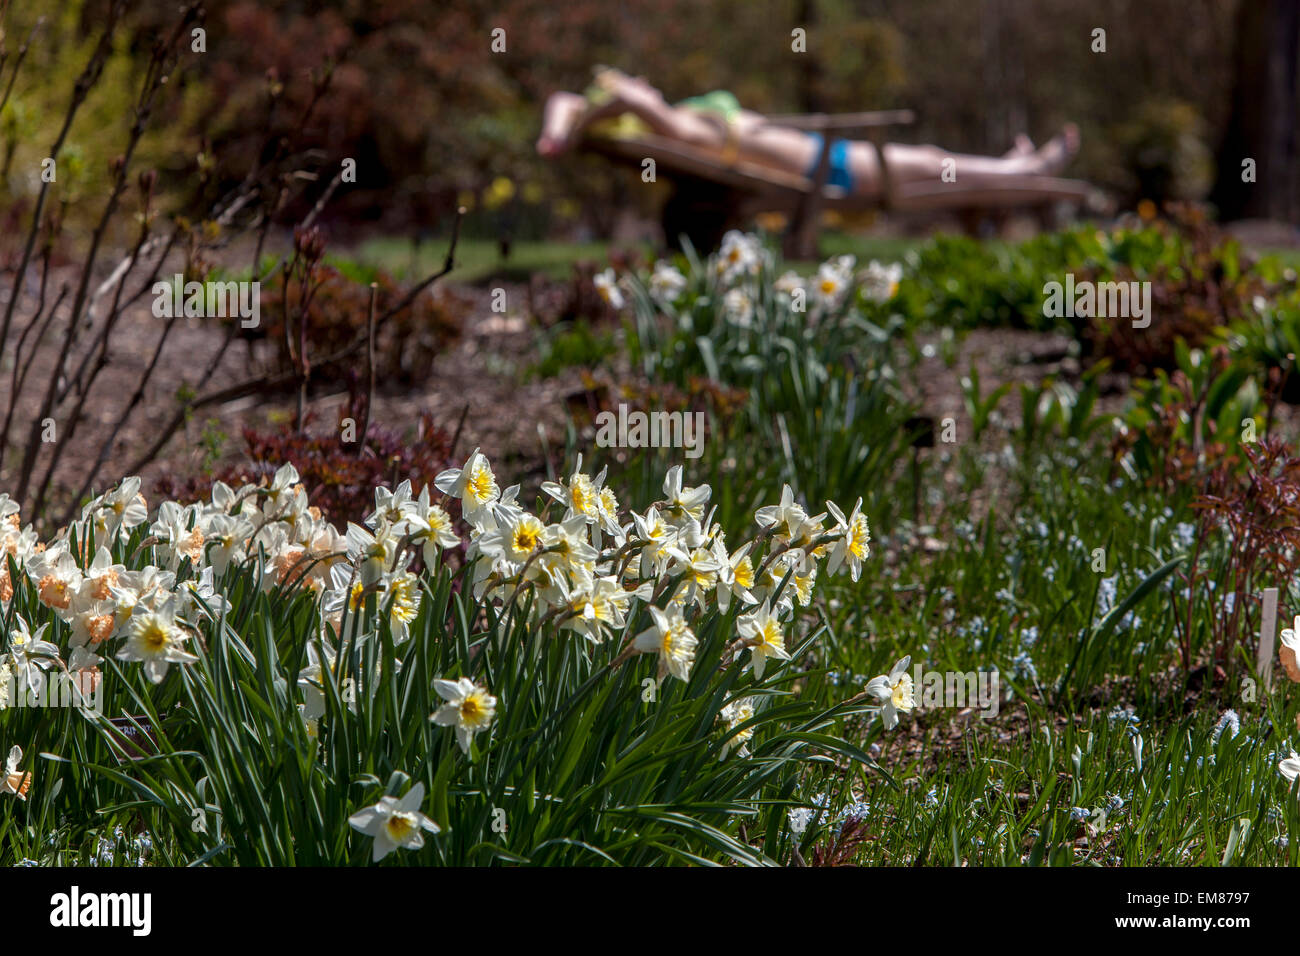 Frühling Garten Blumen Rasen und Sonnenbaden Frau Daffodils Garten Blumenbeet Ruhe im April Garten Stockfoto